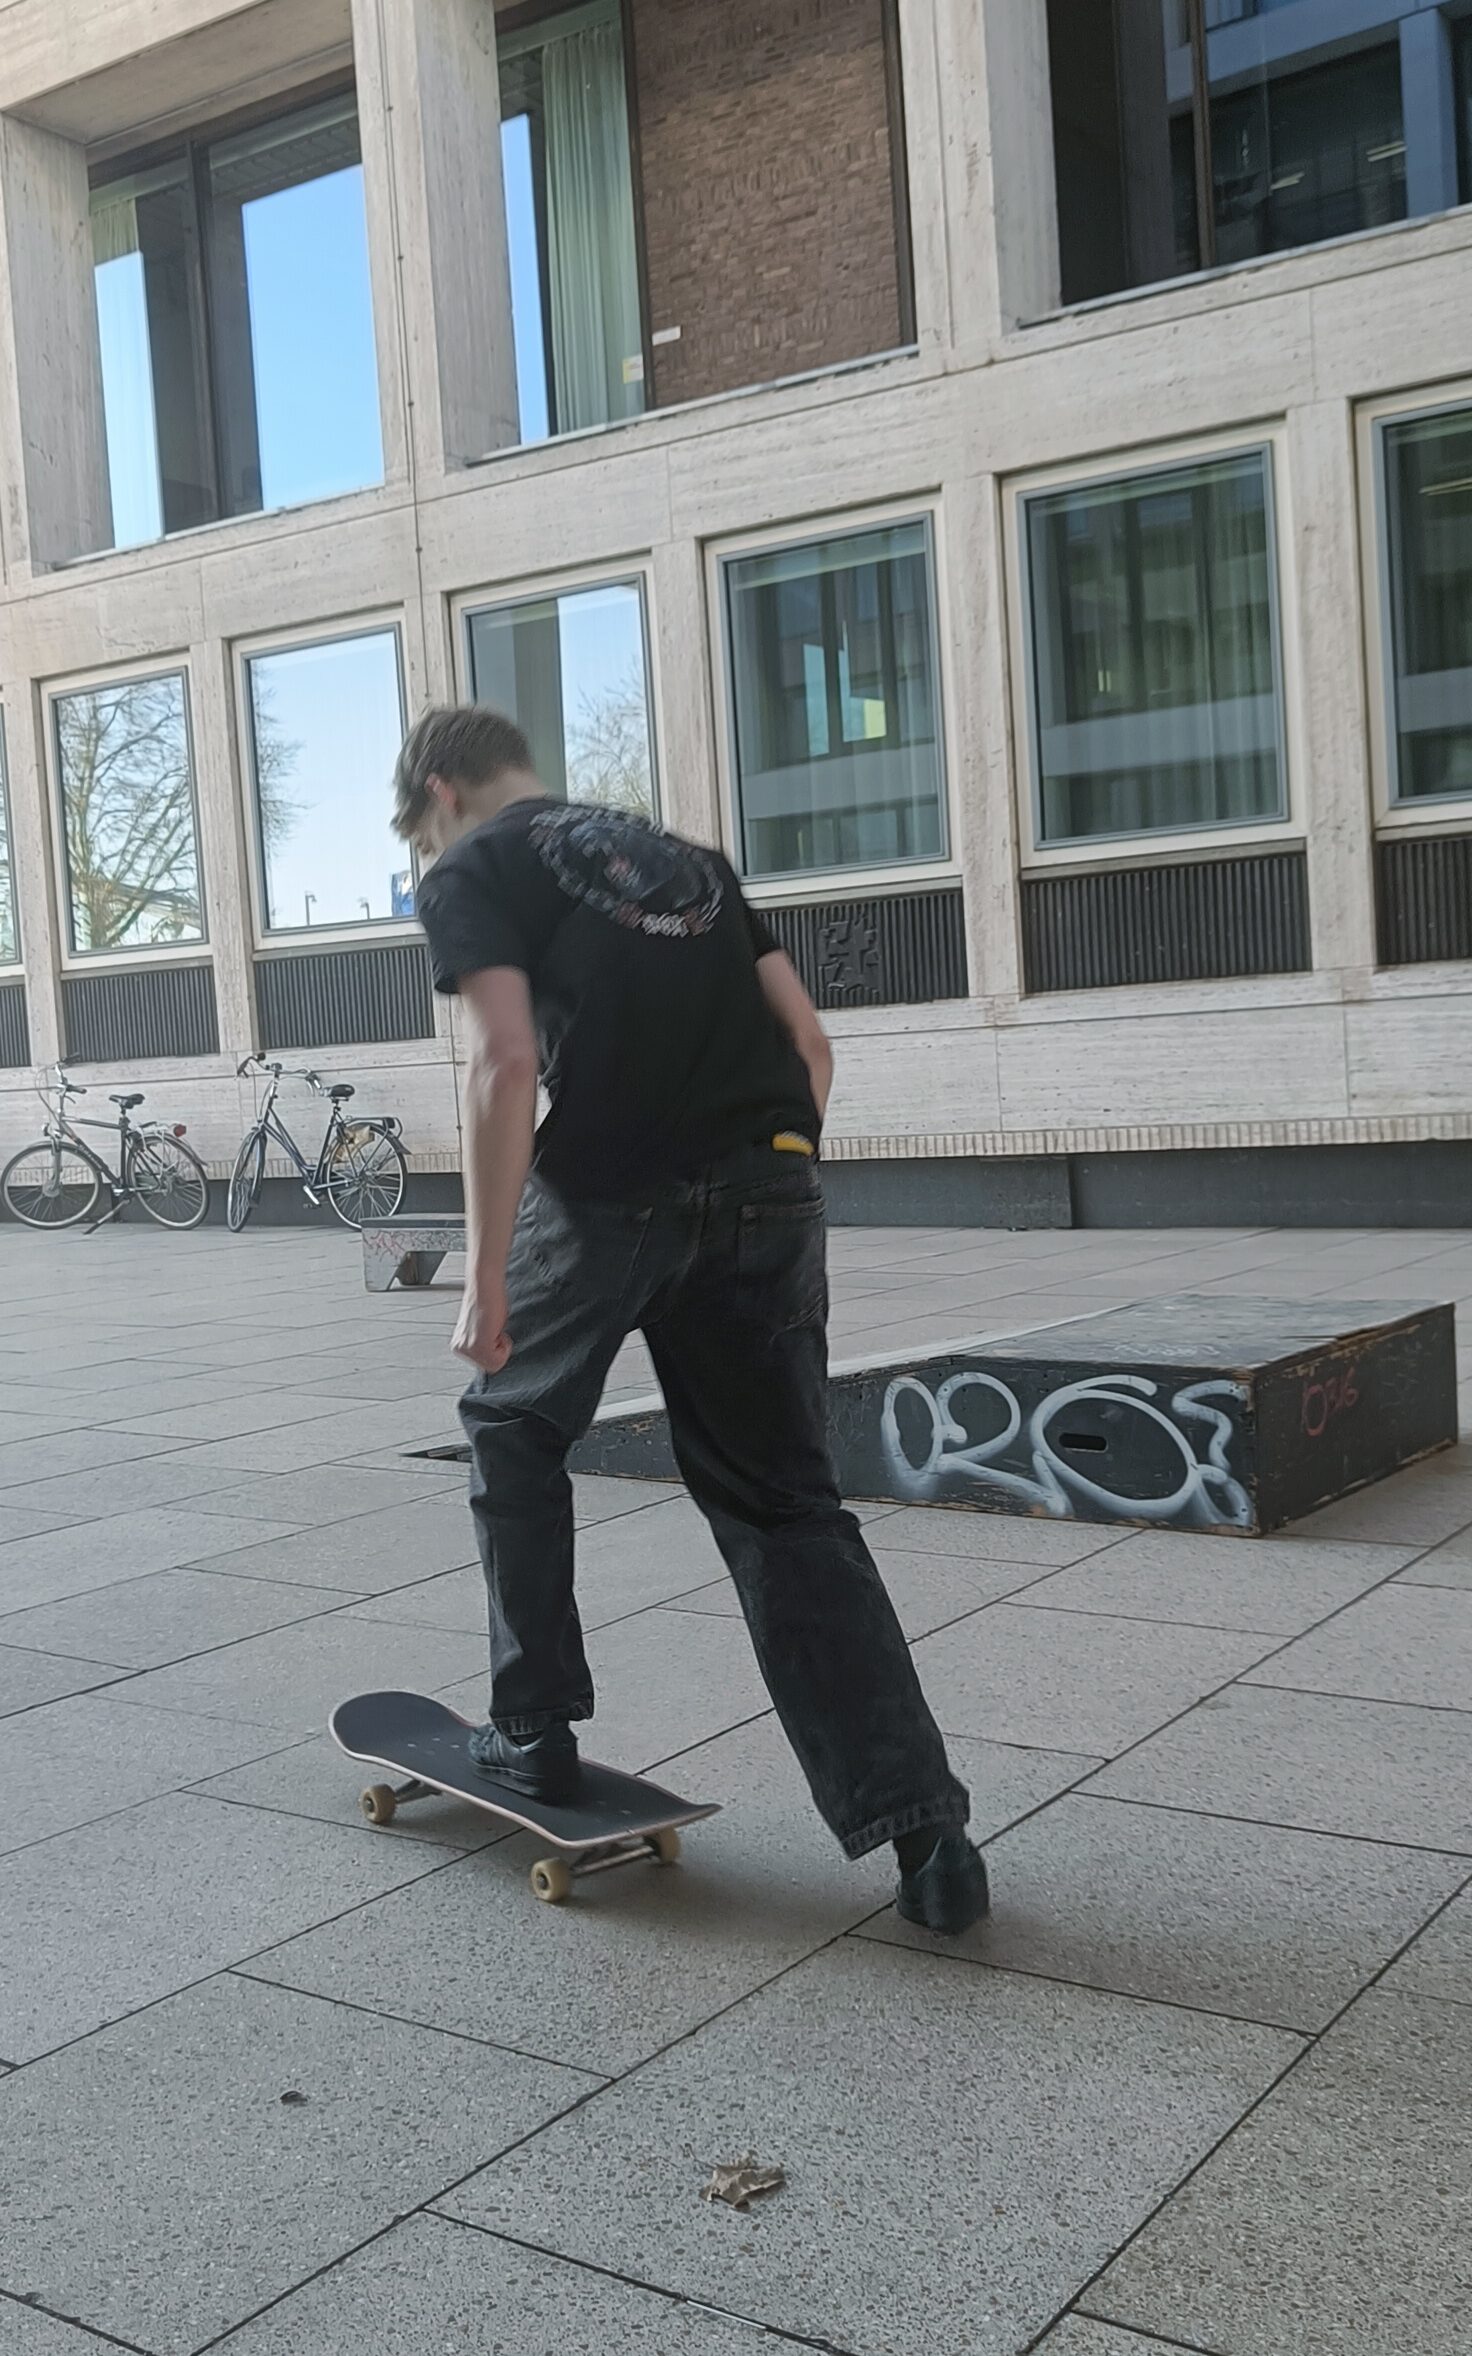 Straat-skateboarders en het machtsevenwicht van publieke ruimte